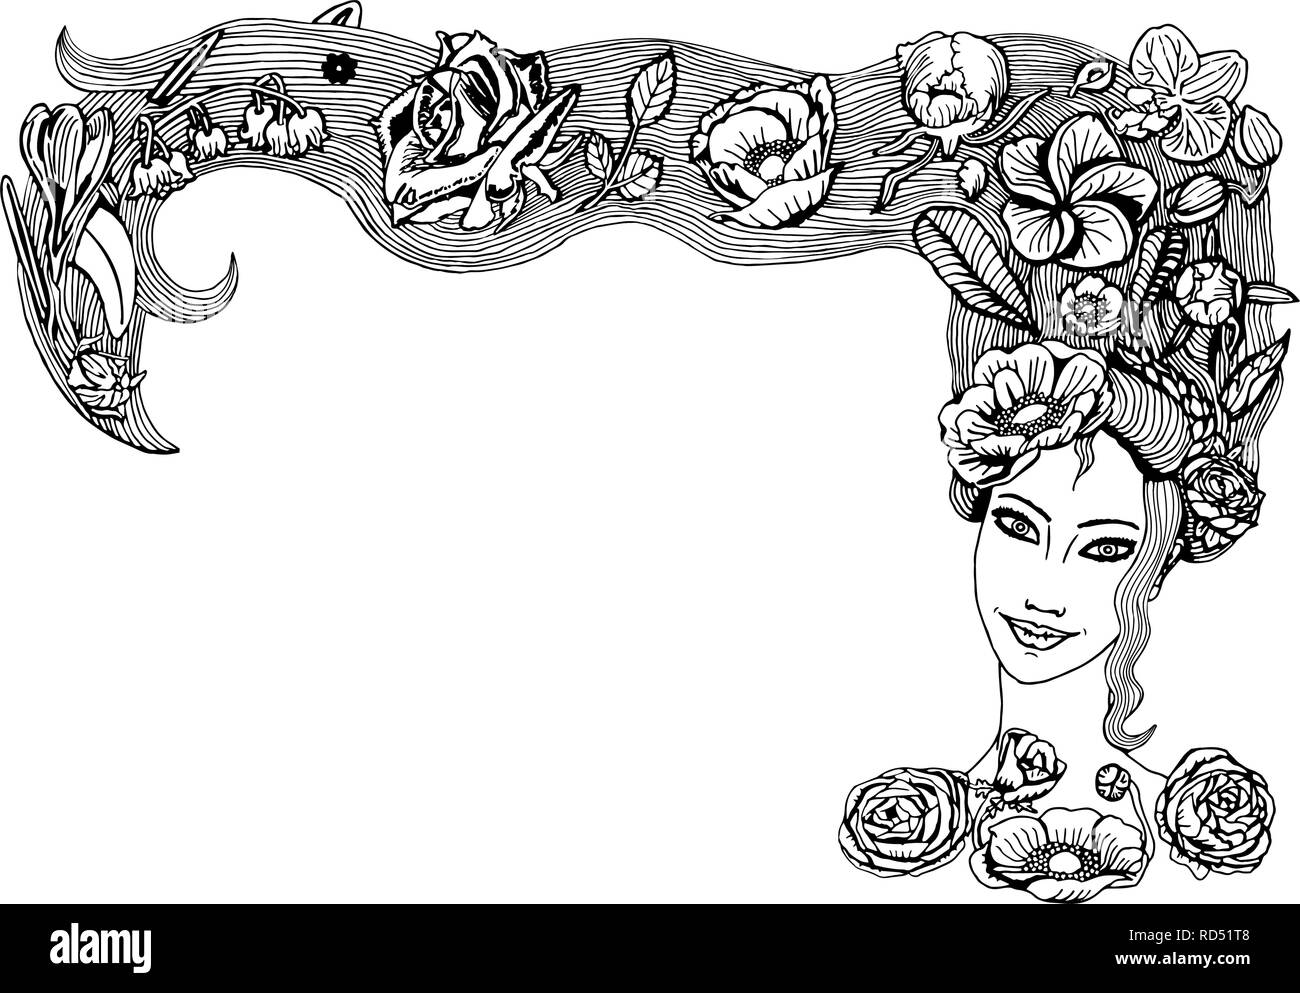 Abbildung: Schöne junge Mädchen mit langen Haaren, Blüten, Knospen, Blätter in der Frisur. Feder Mädchen mit Flora in Haar für Grußkarten. Stock Vektor